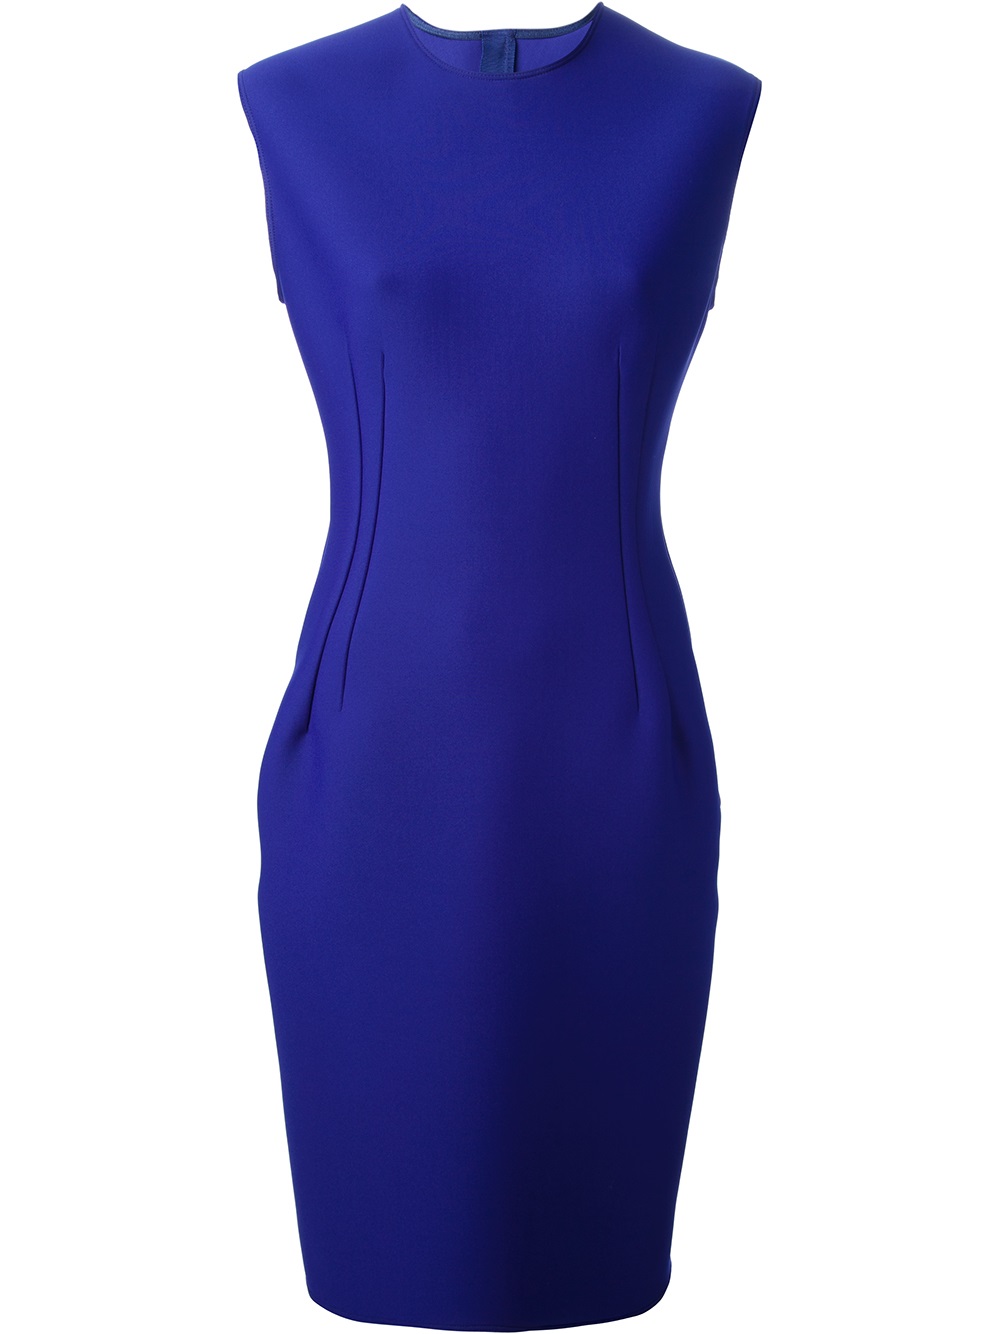 Lyst - Lanvin Sleeveless Jersey Dress in Blue